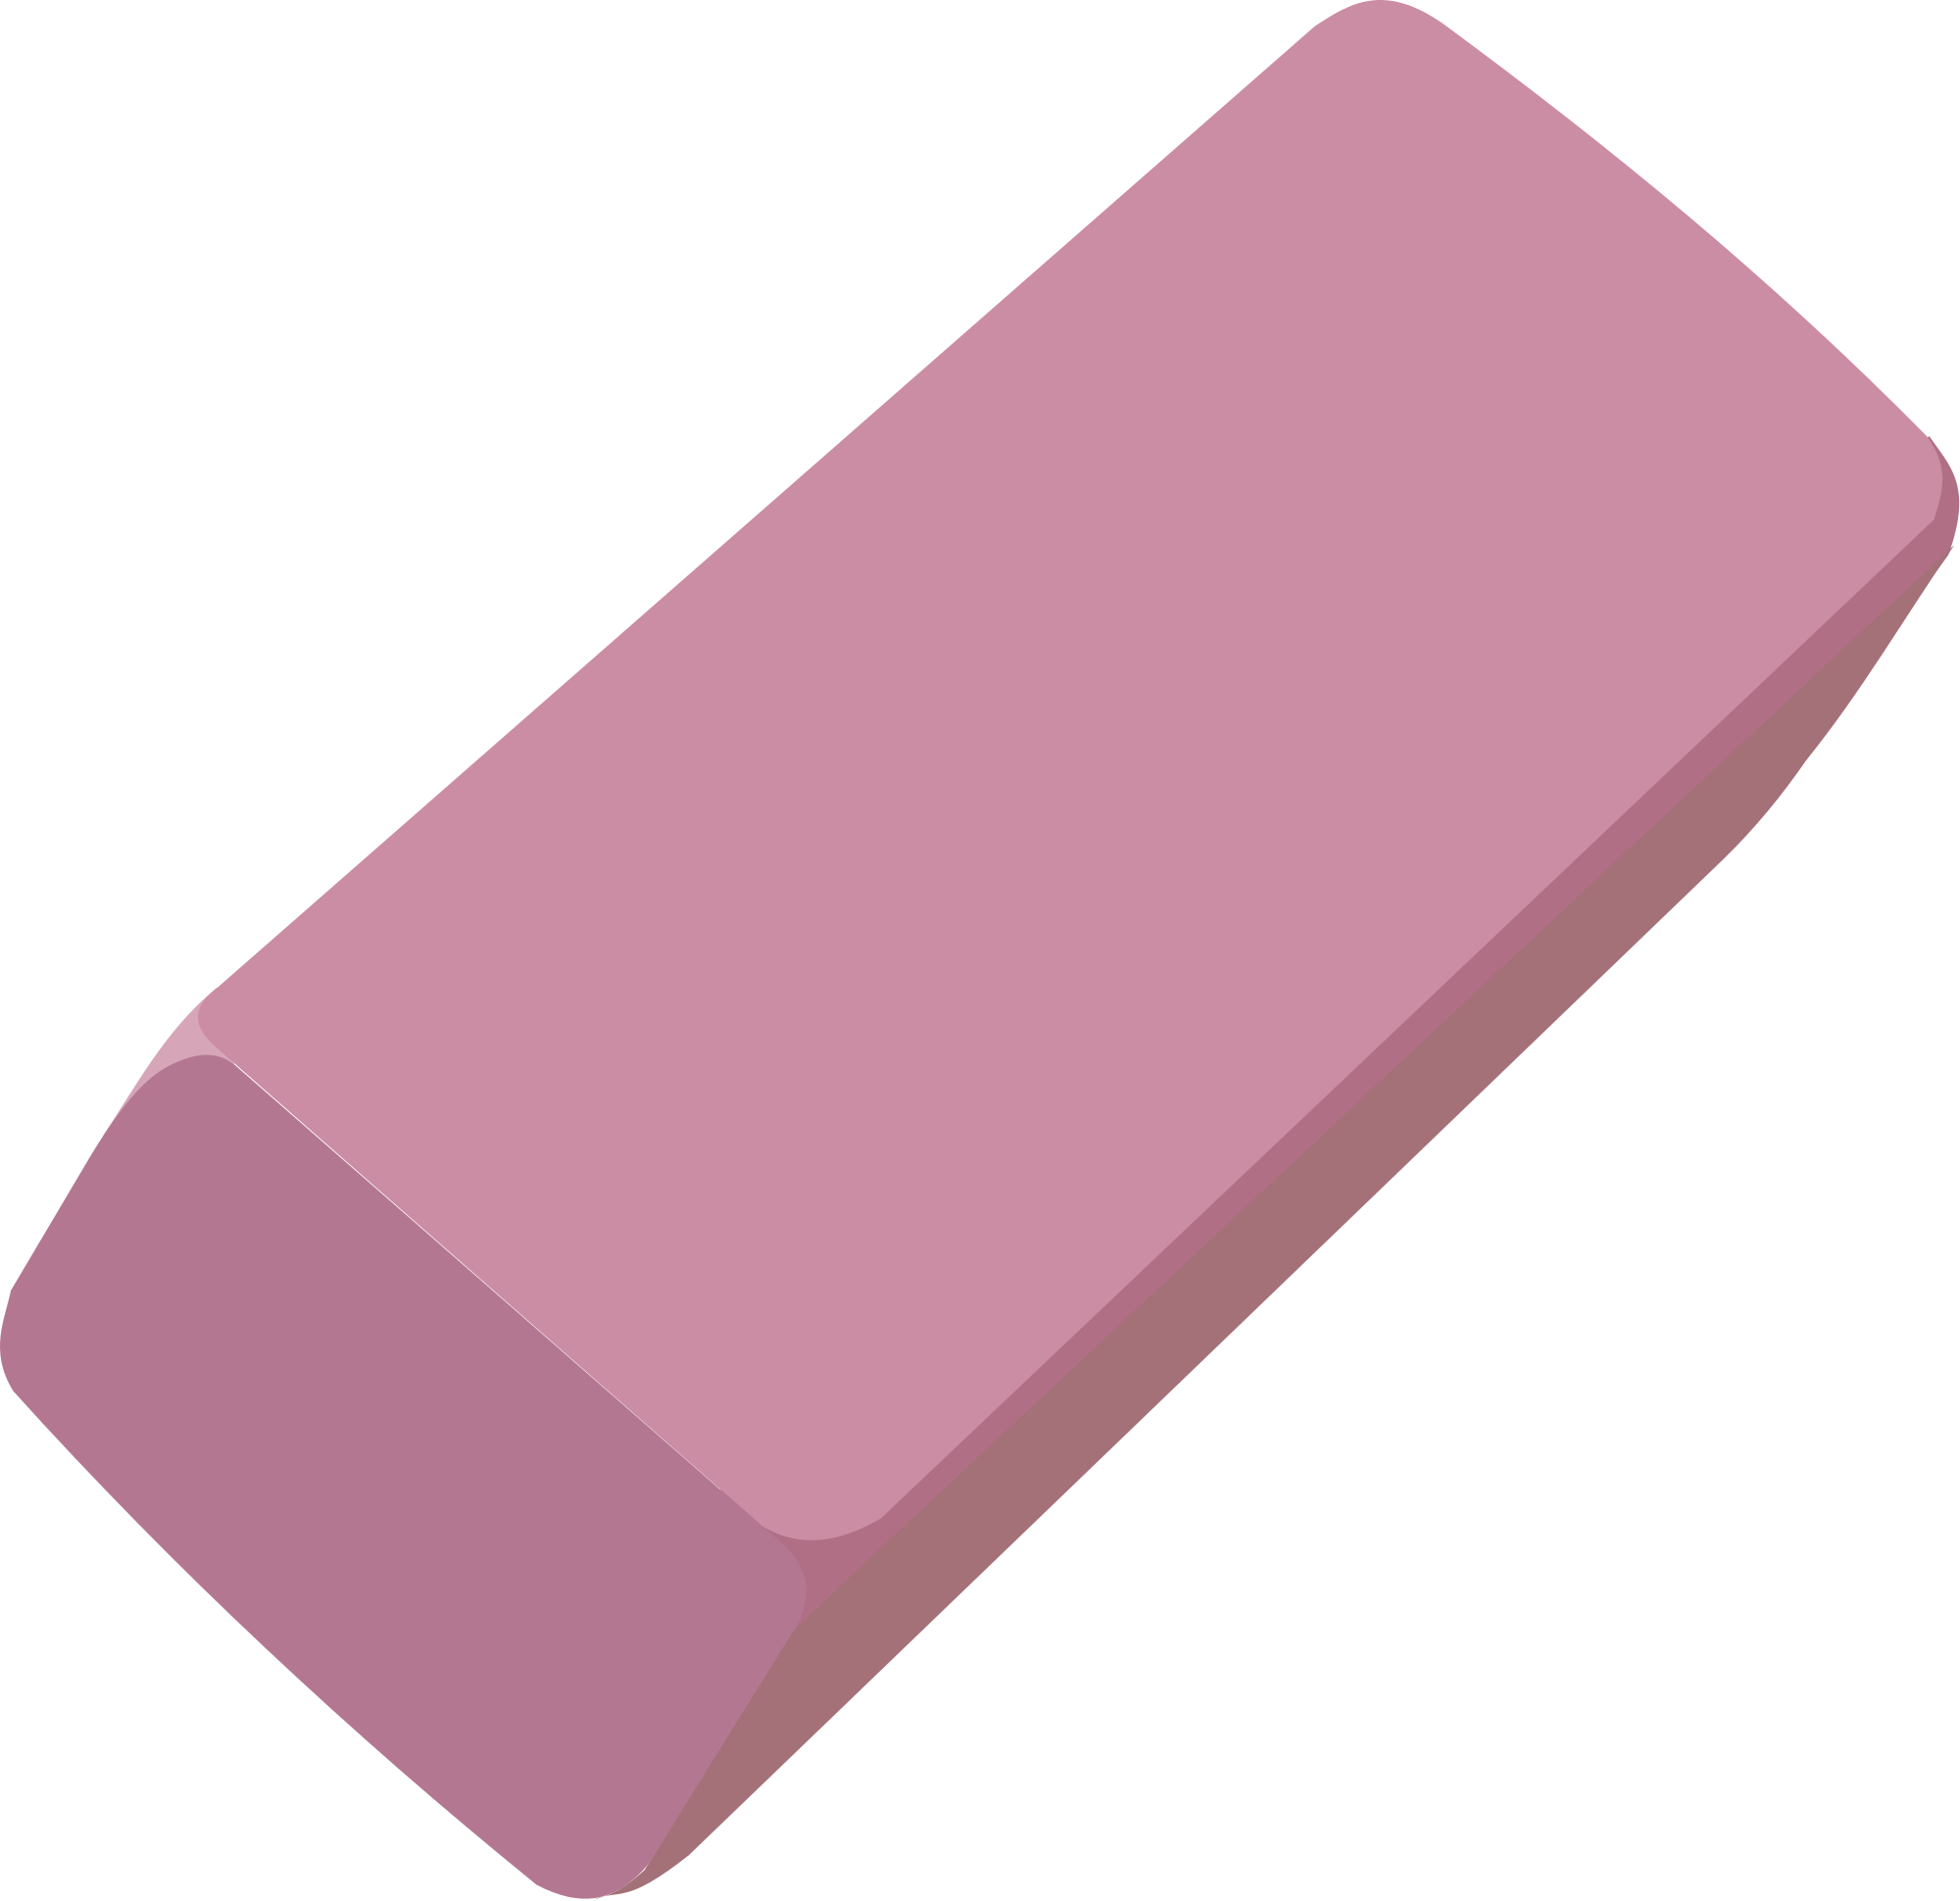 Eraser clipart pink. 